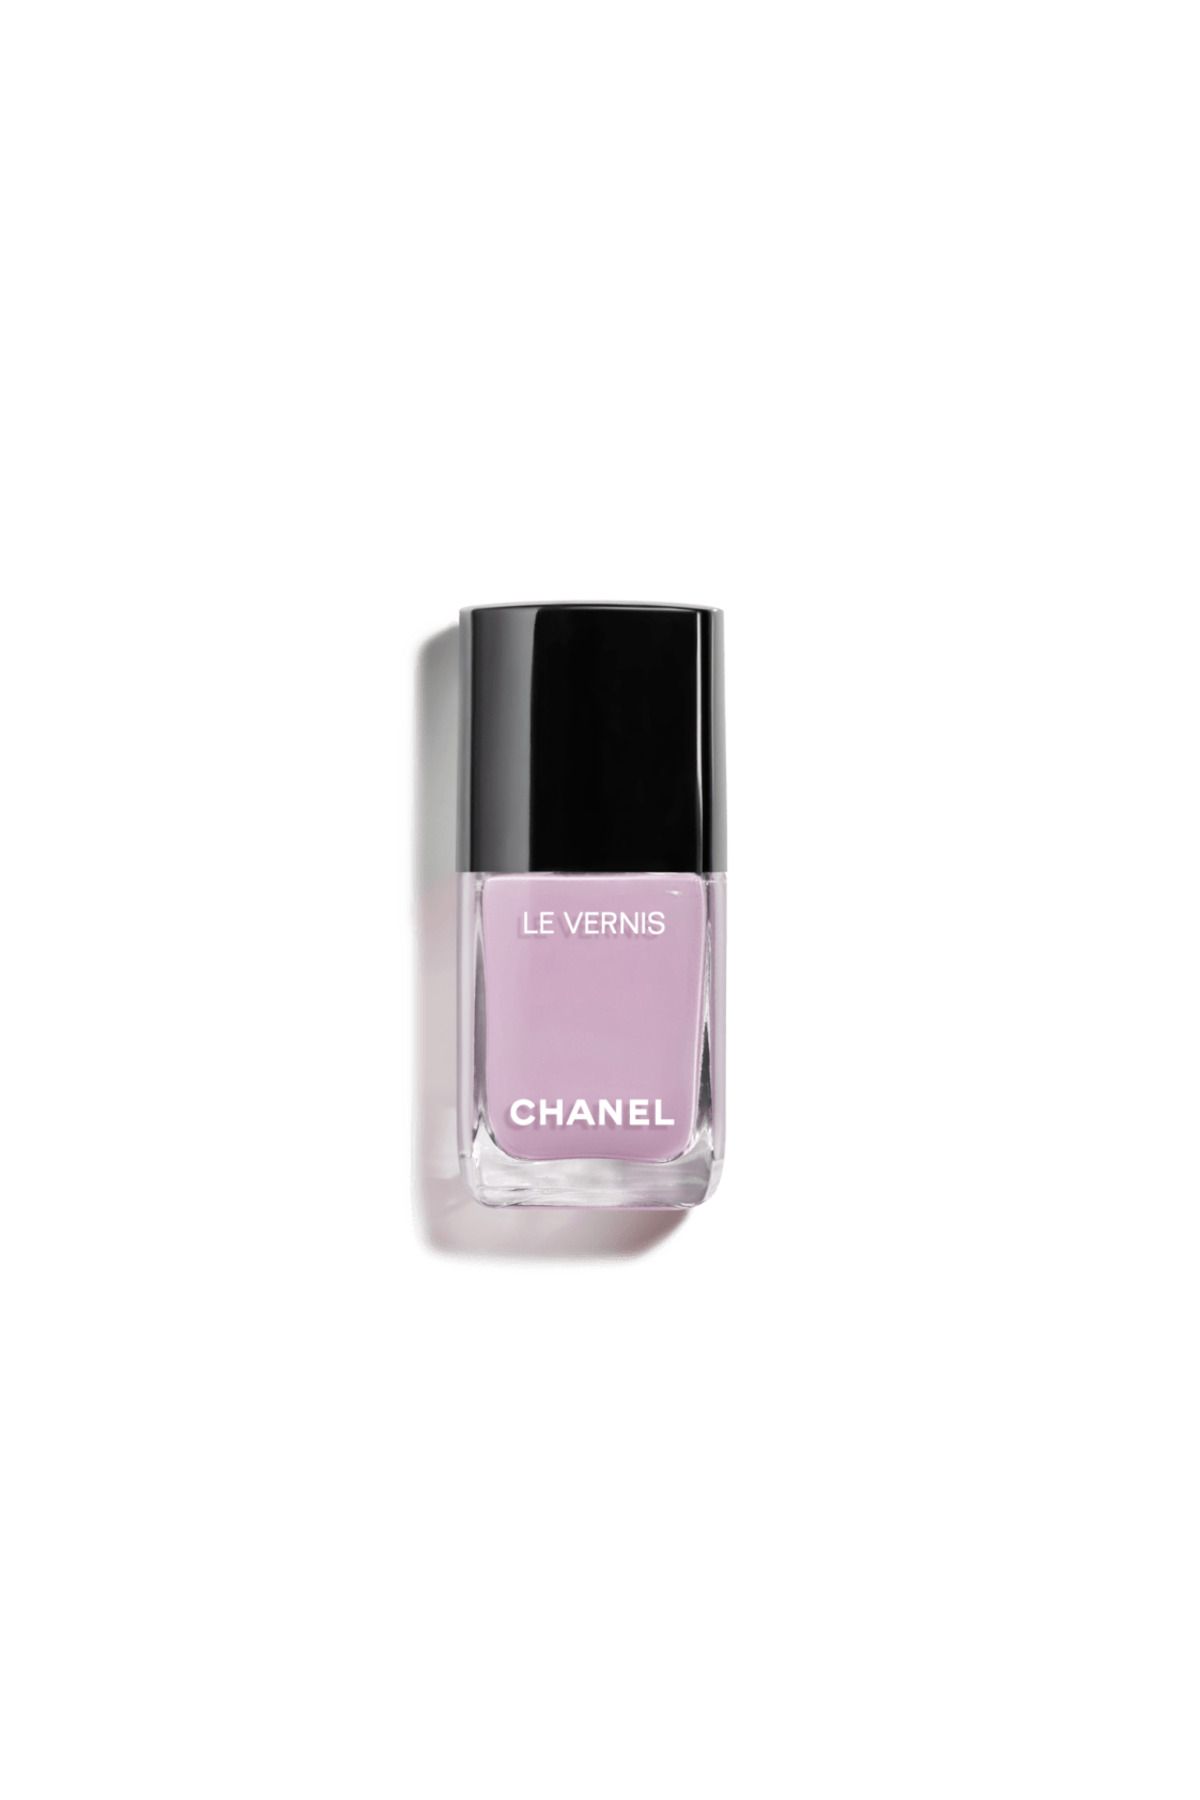 Chanel LE VERNIS - Uzun Süre Kalıcı Parlak Bitişli Koruyucu Oje 13ml